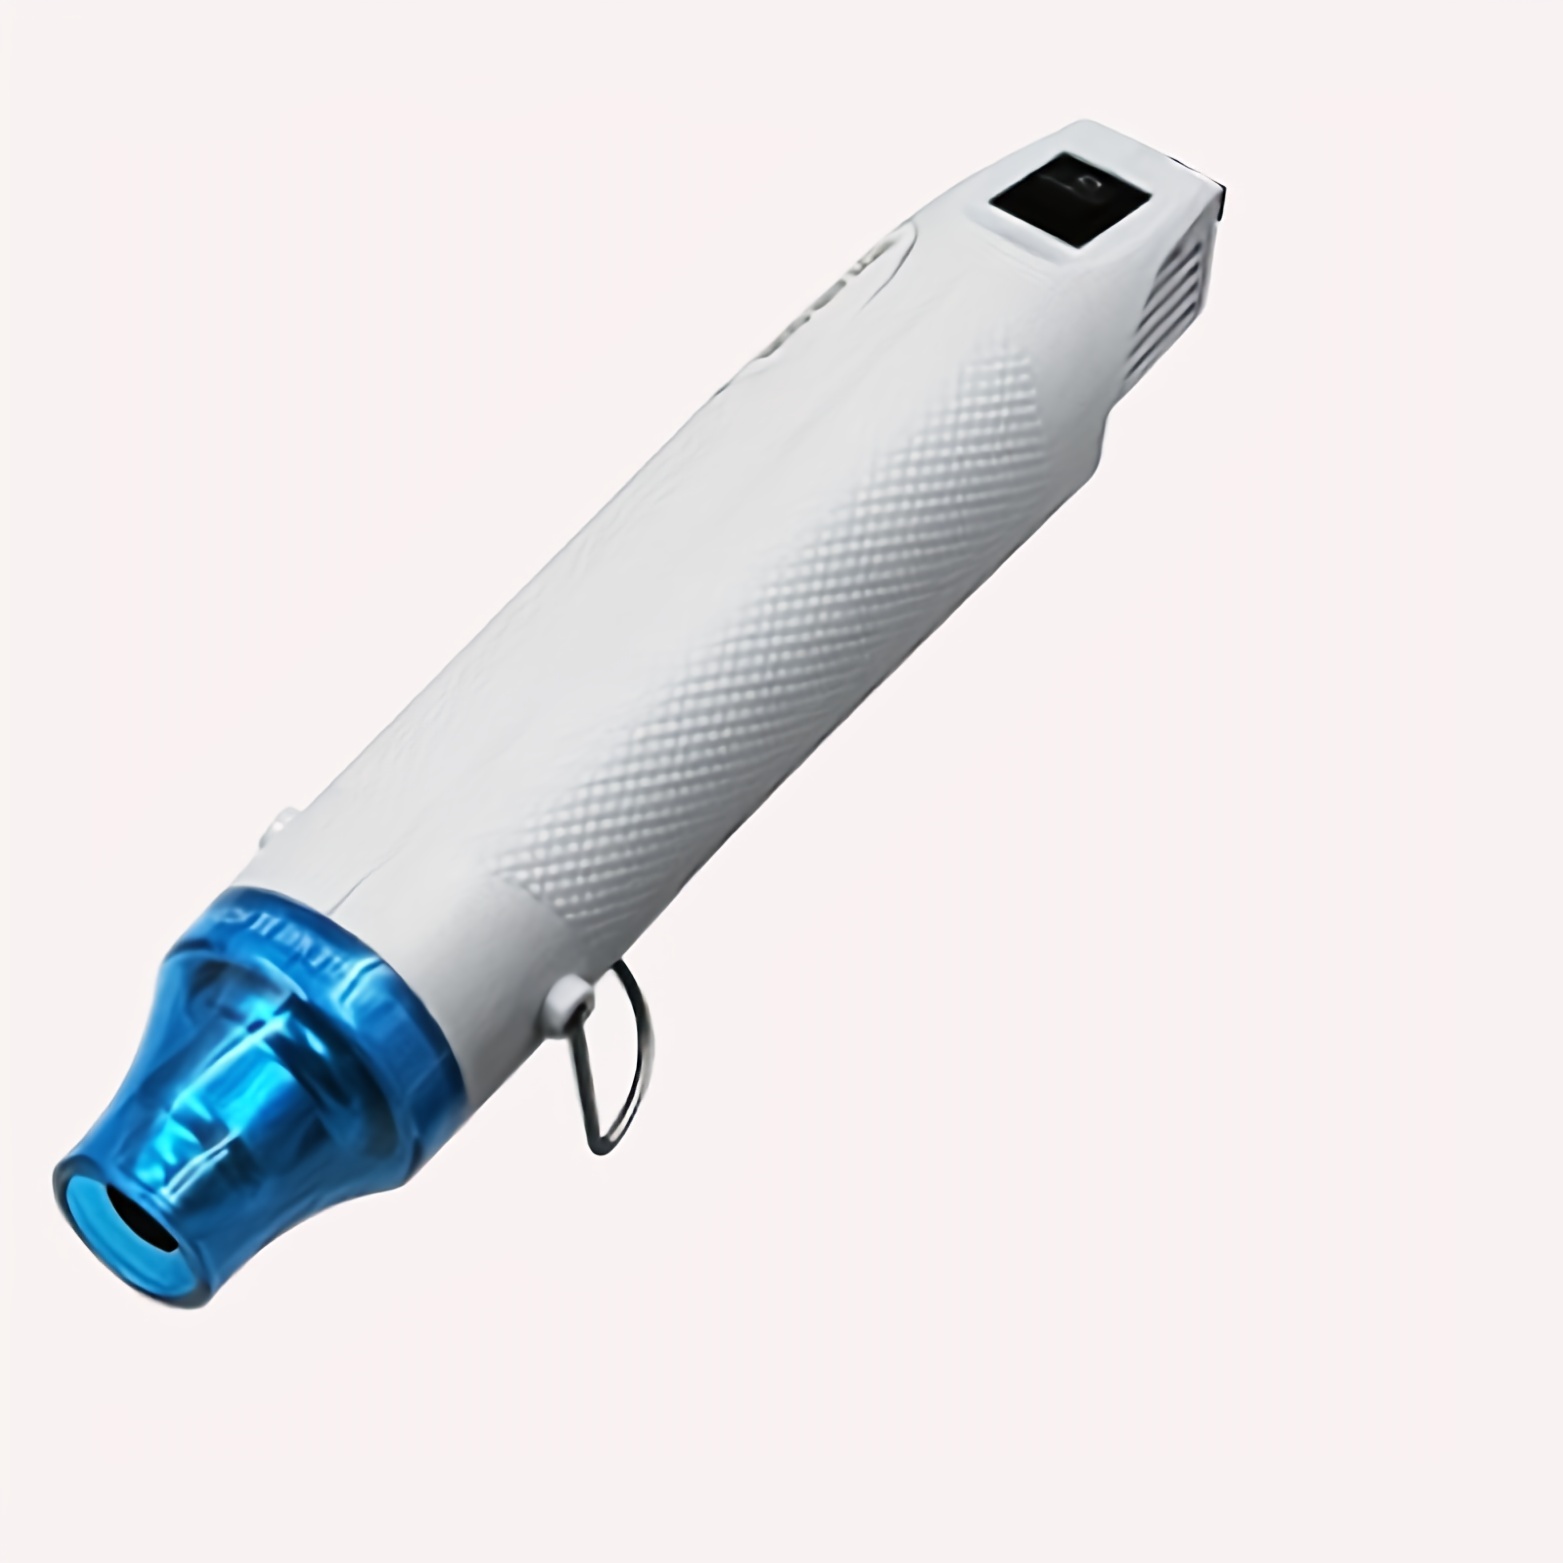 Heat Gun for Crafts, Mini Dual Temp Hot Air Gun Tool for Epoxy